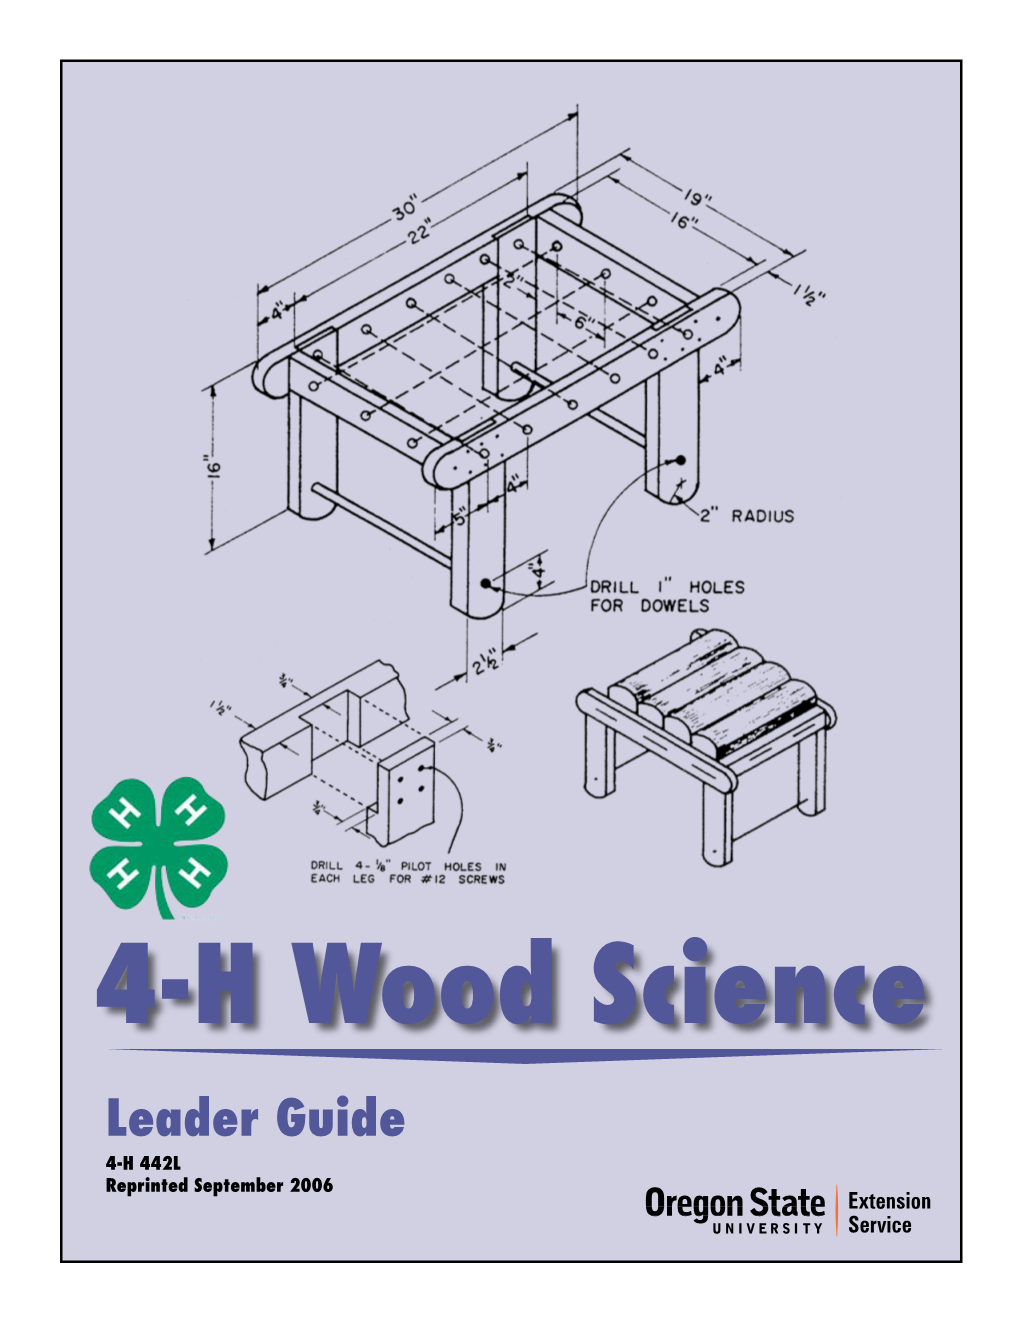 4-H Wood Science Leader Guide 4-H 442L Reprinted September 2006 4-H Wood Science Leader Guide